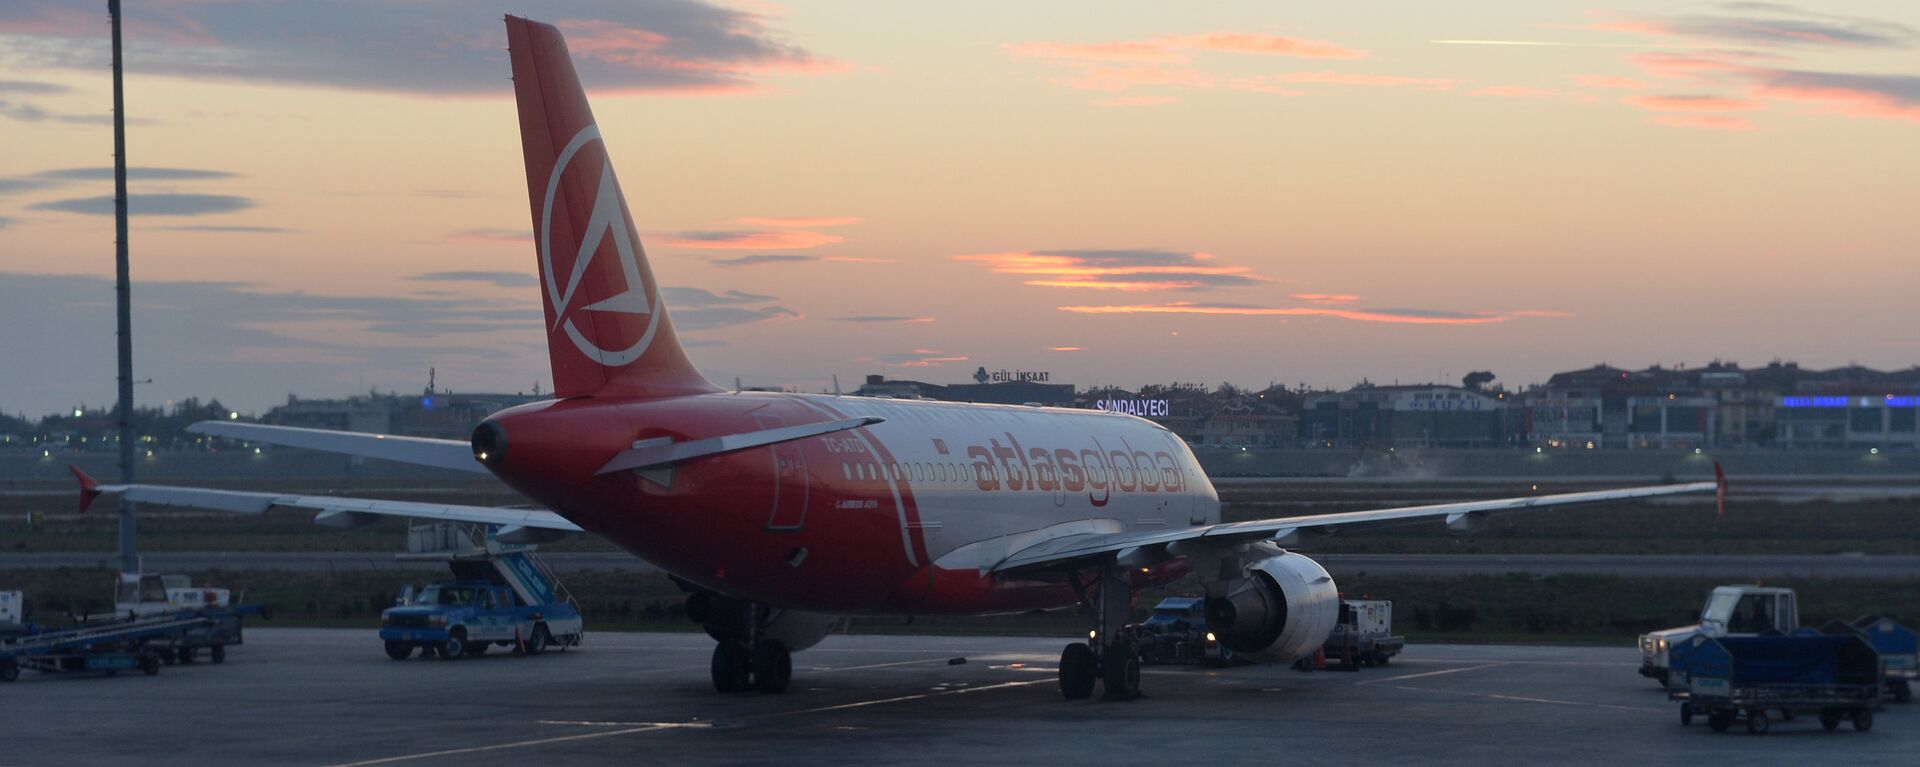 Самолет Airbus A319 авиакомпании Turkish Airlines в Международном аэропорту имени Ататюрка в Стамбуле - Sputnik Узбекистан, 1920, 11.06.2021